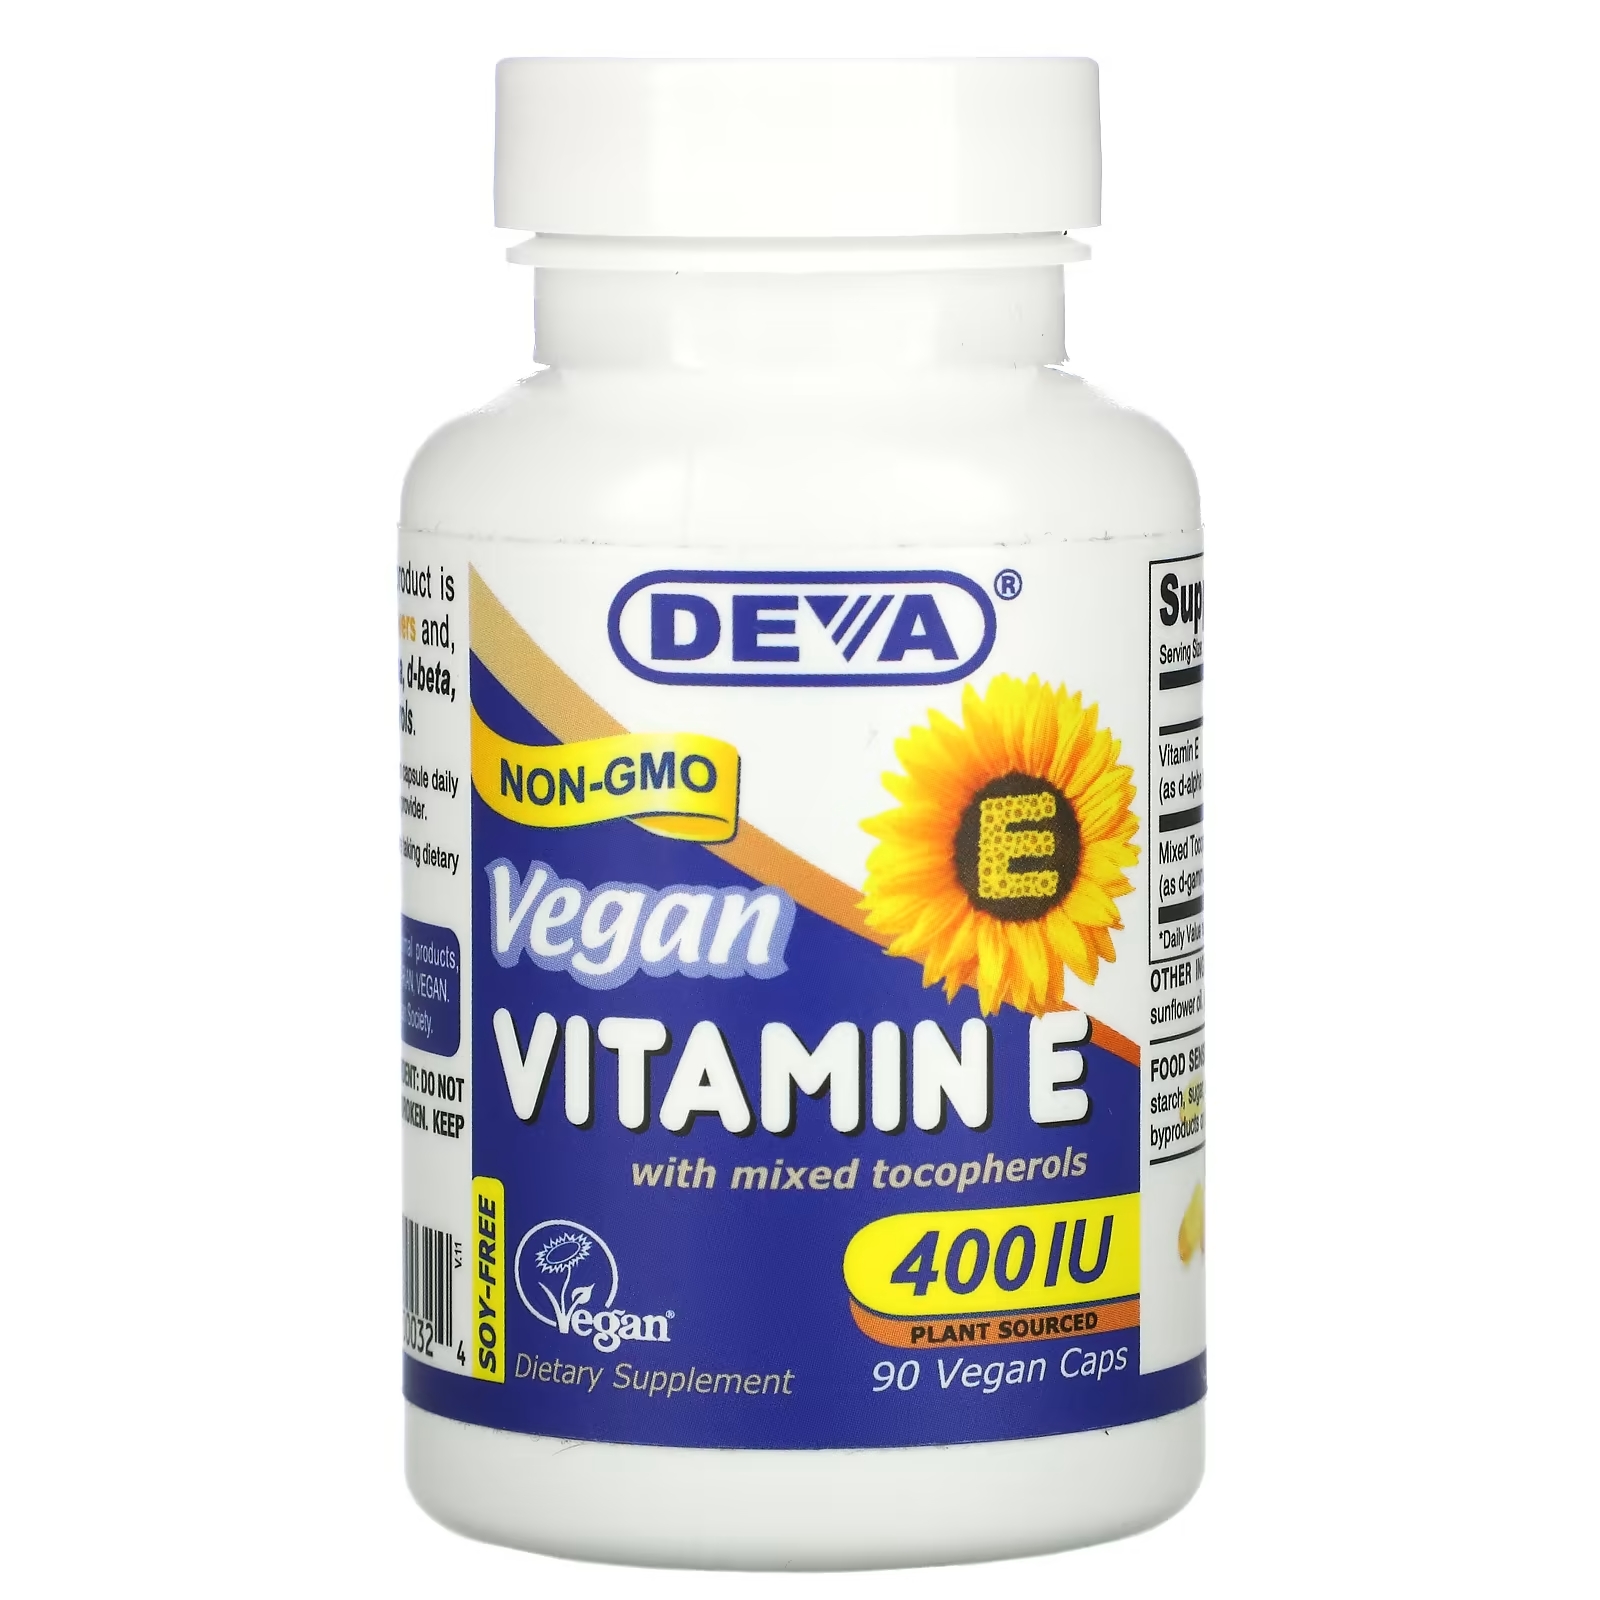 Deva Веганский витамин E со смешанными токоферолами без сои 400 МЕ, 90 веганских капсул deva веганский витамин e со смешанными токоферолами 400 ме 90 веганских капсул